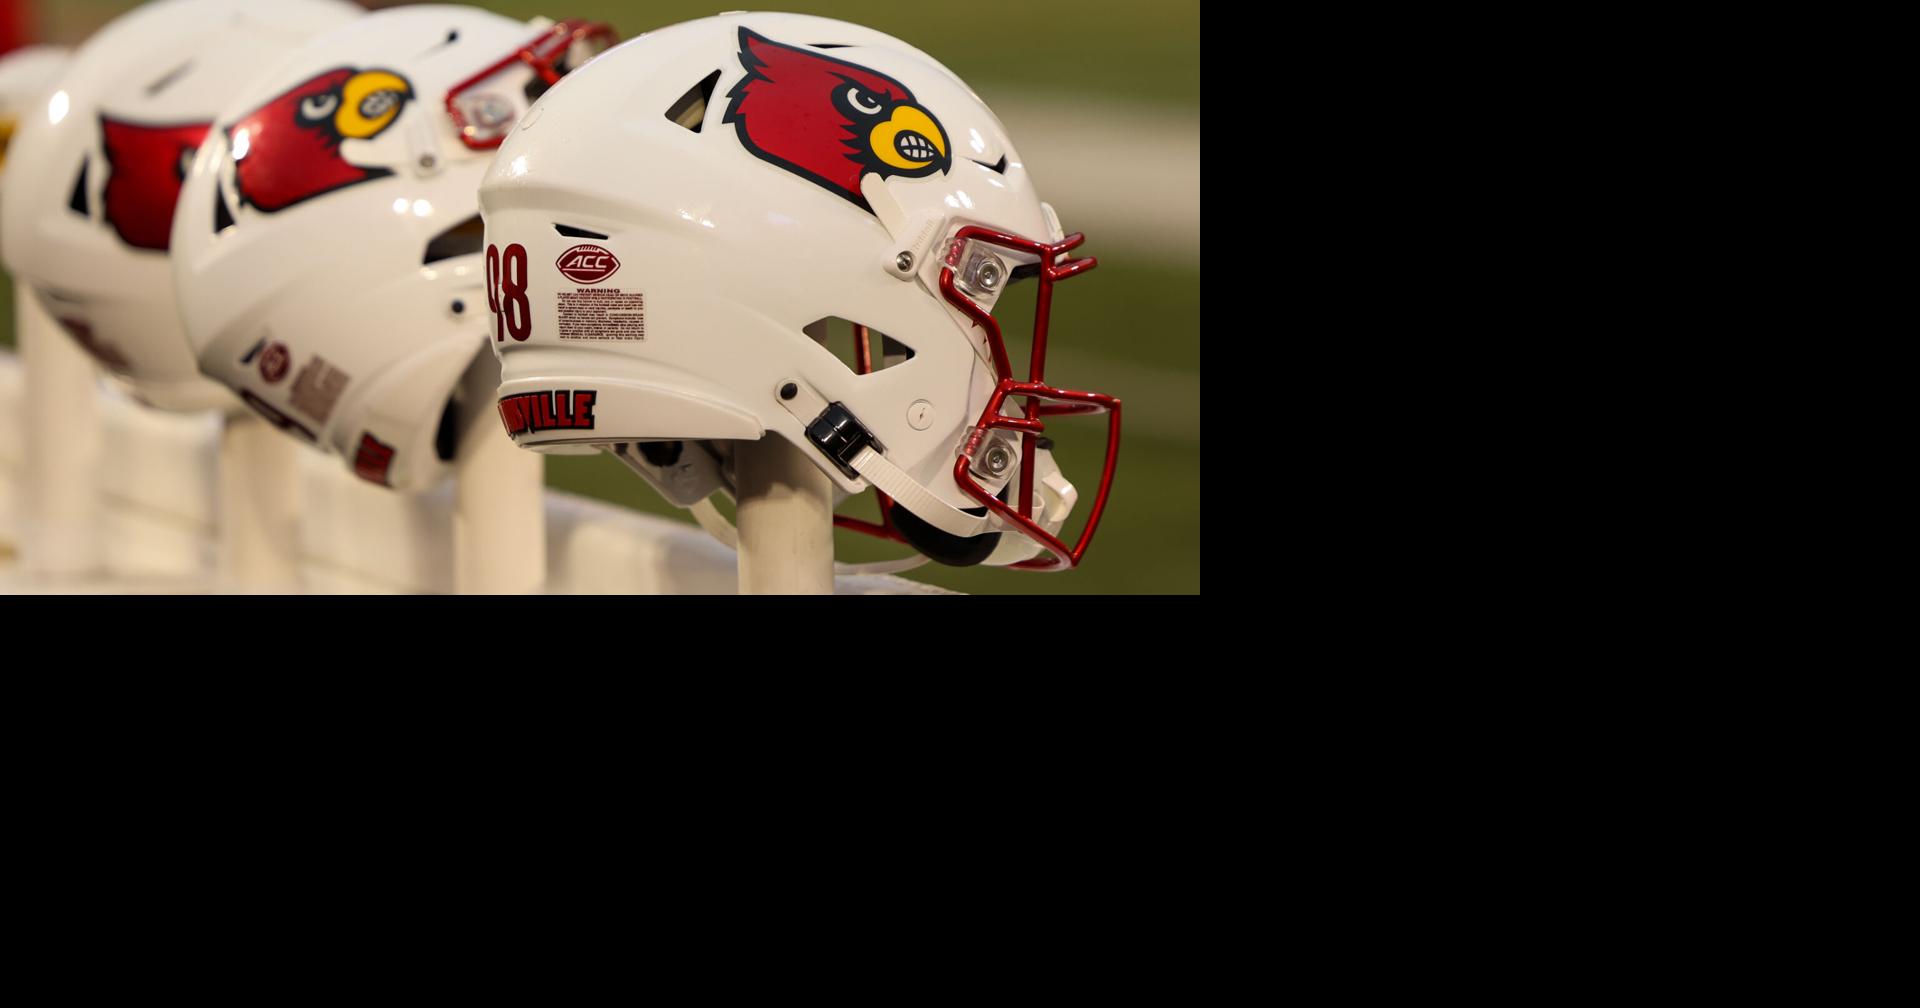 University of Louisville football helmets